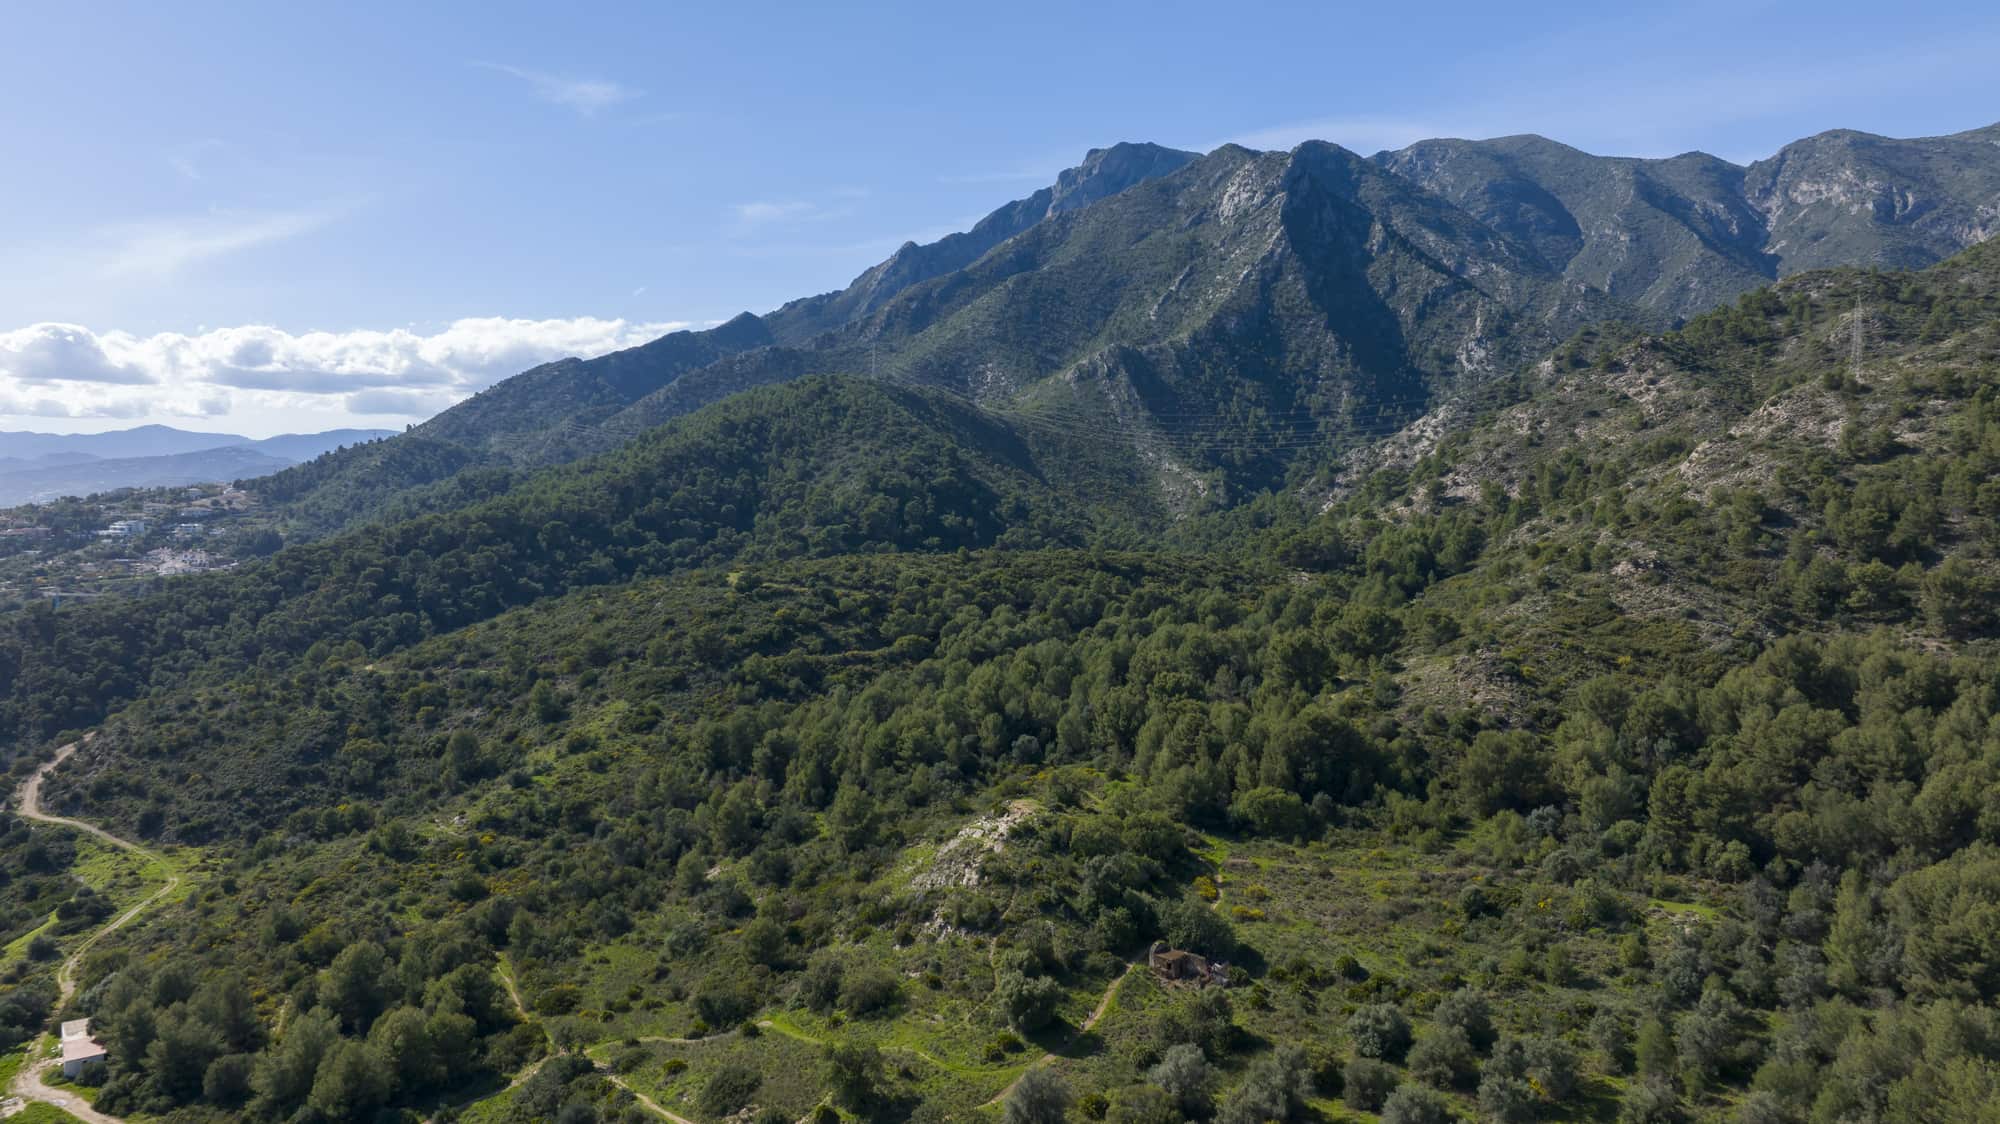 Sierra Blanca mountains in Spain